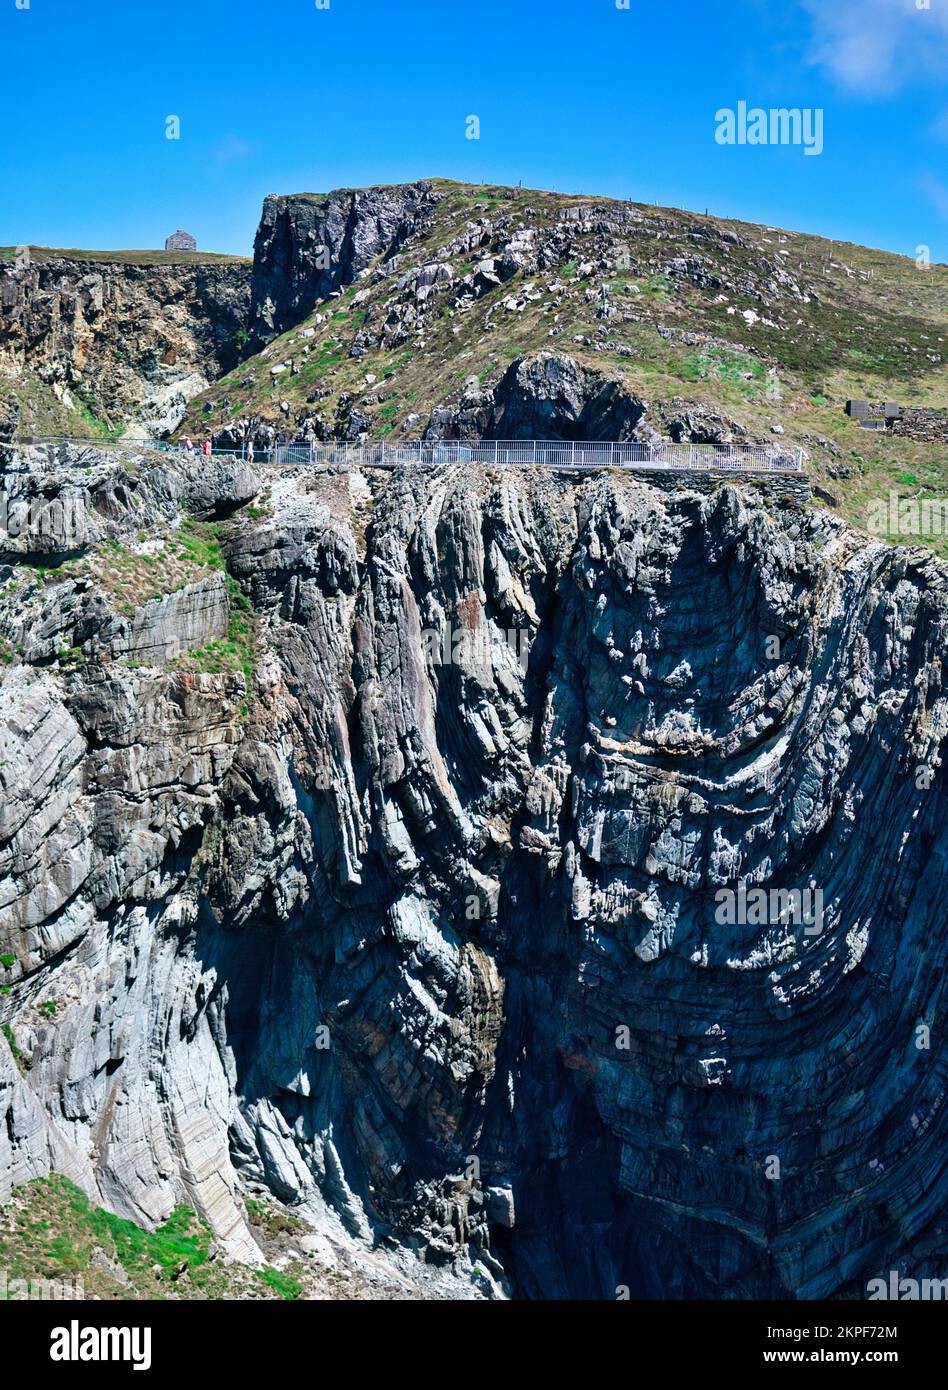 Spektakuläre Mizen Head Cliffs an der wilden Westküste Irlands, Mizen Head Halbinsel, Carbery, County Cork, Irland Stockfoto